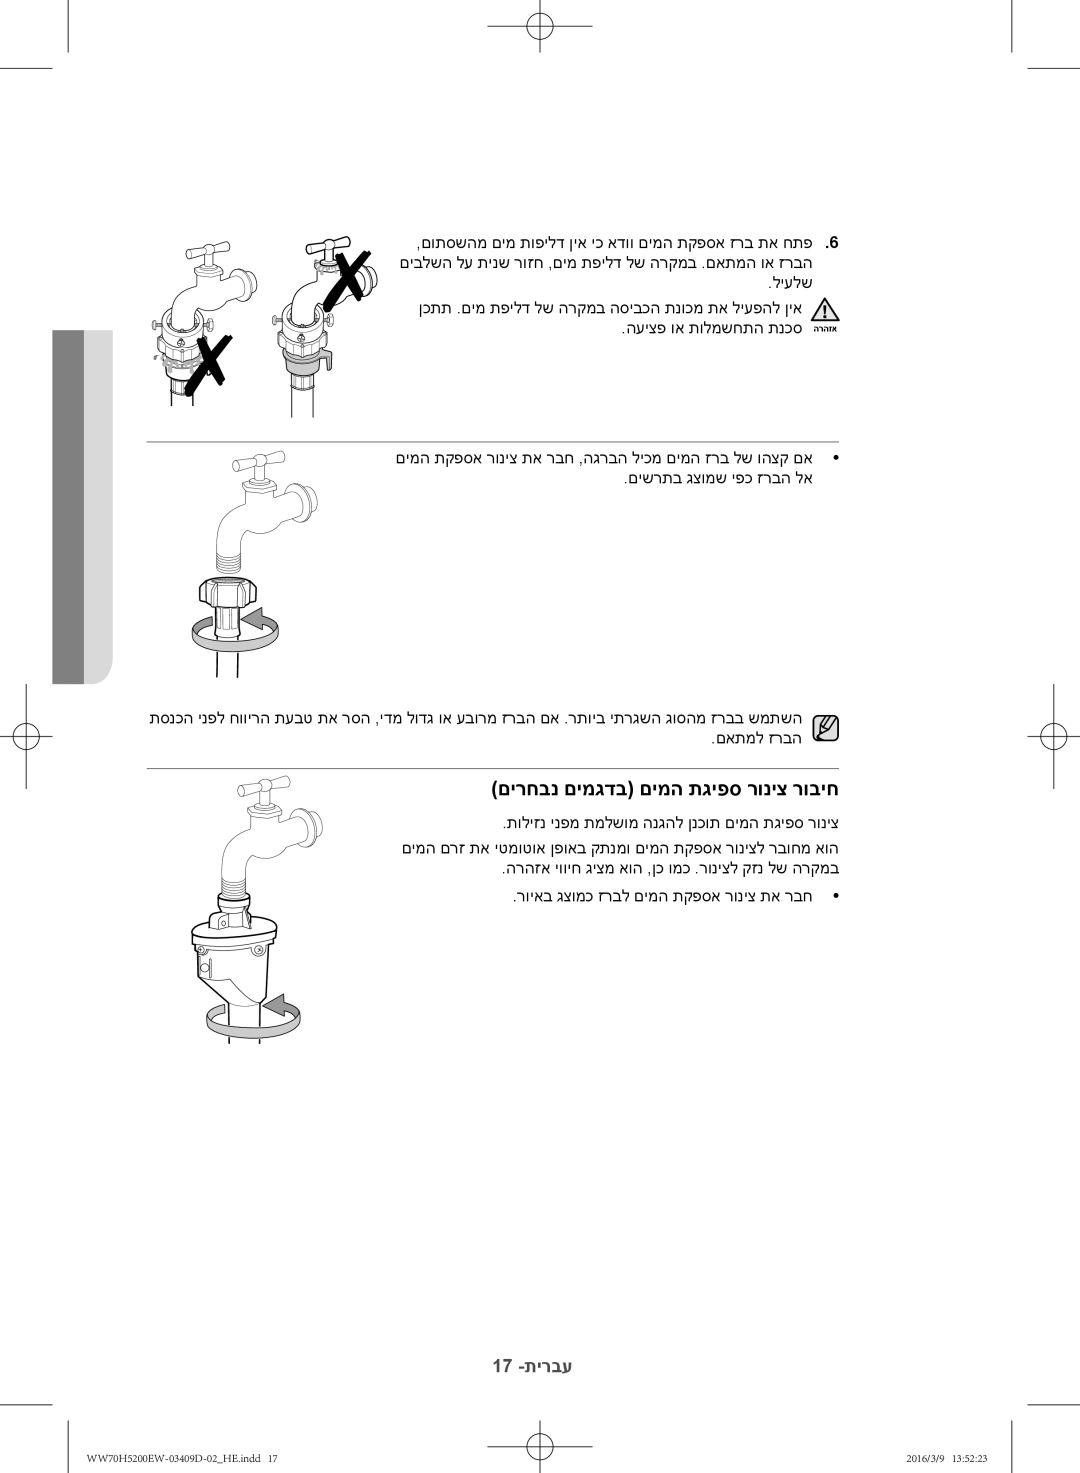 Samsung WW70H5200EW/KJ manual םירחבנ םימגדב םימה תגיפס רוניצ רוביח 